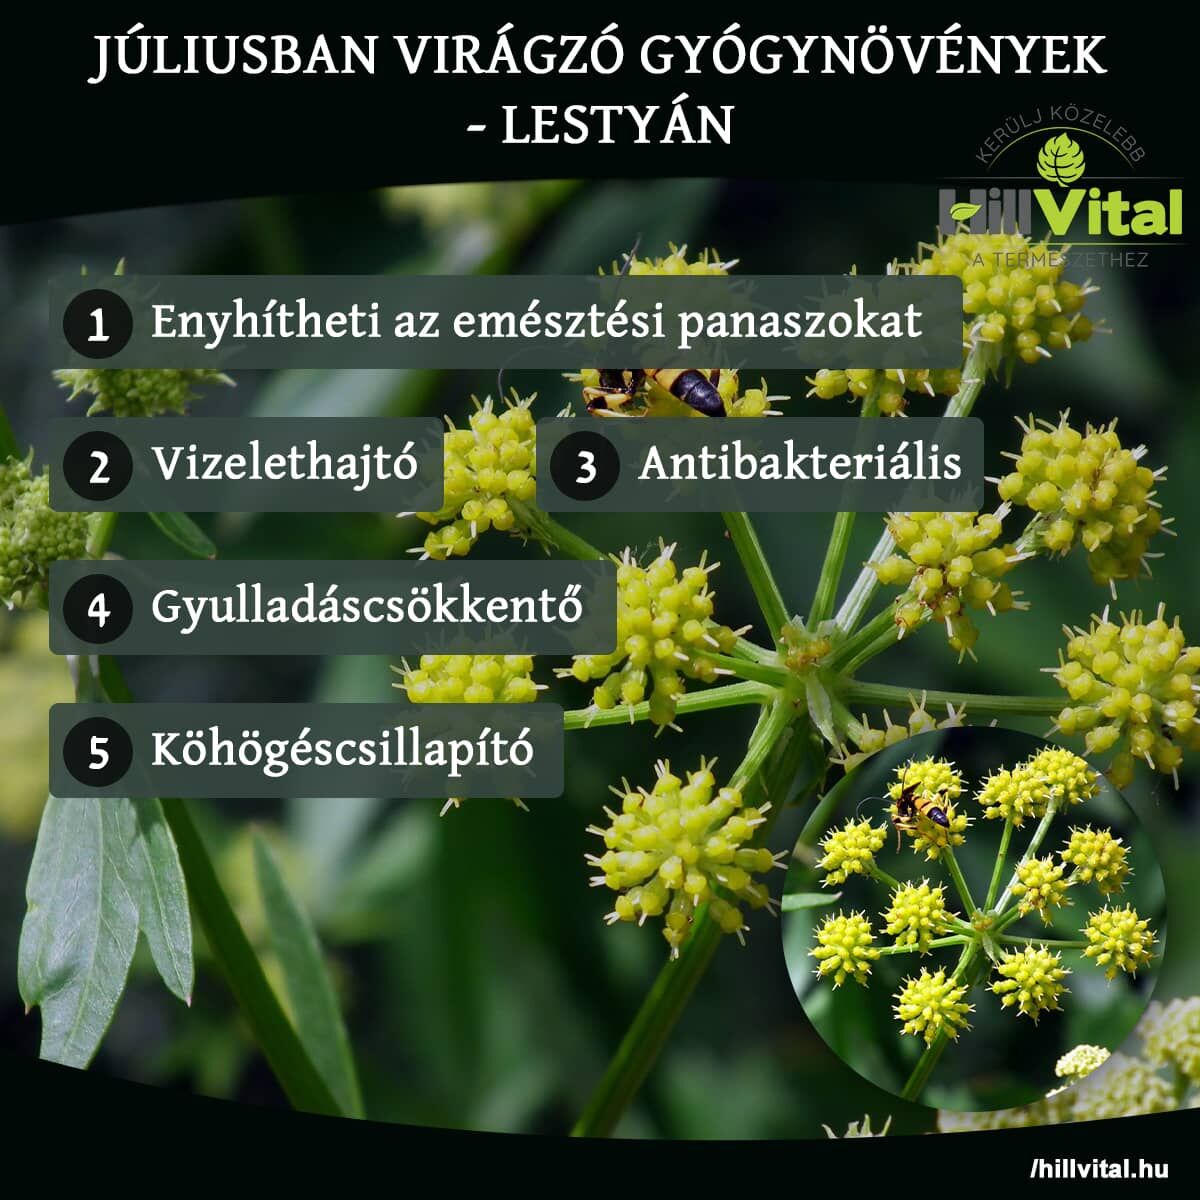 Júliusban virágzó gyógynövények - Lestyán